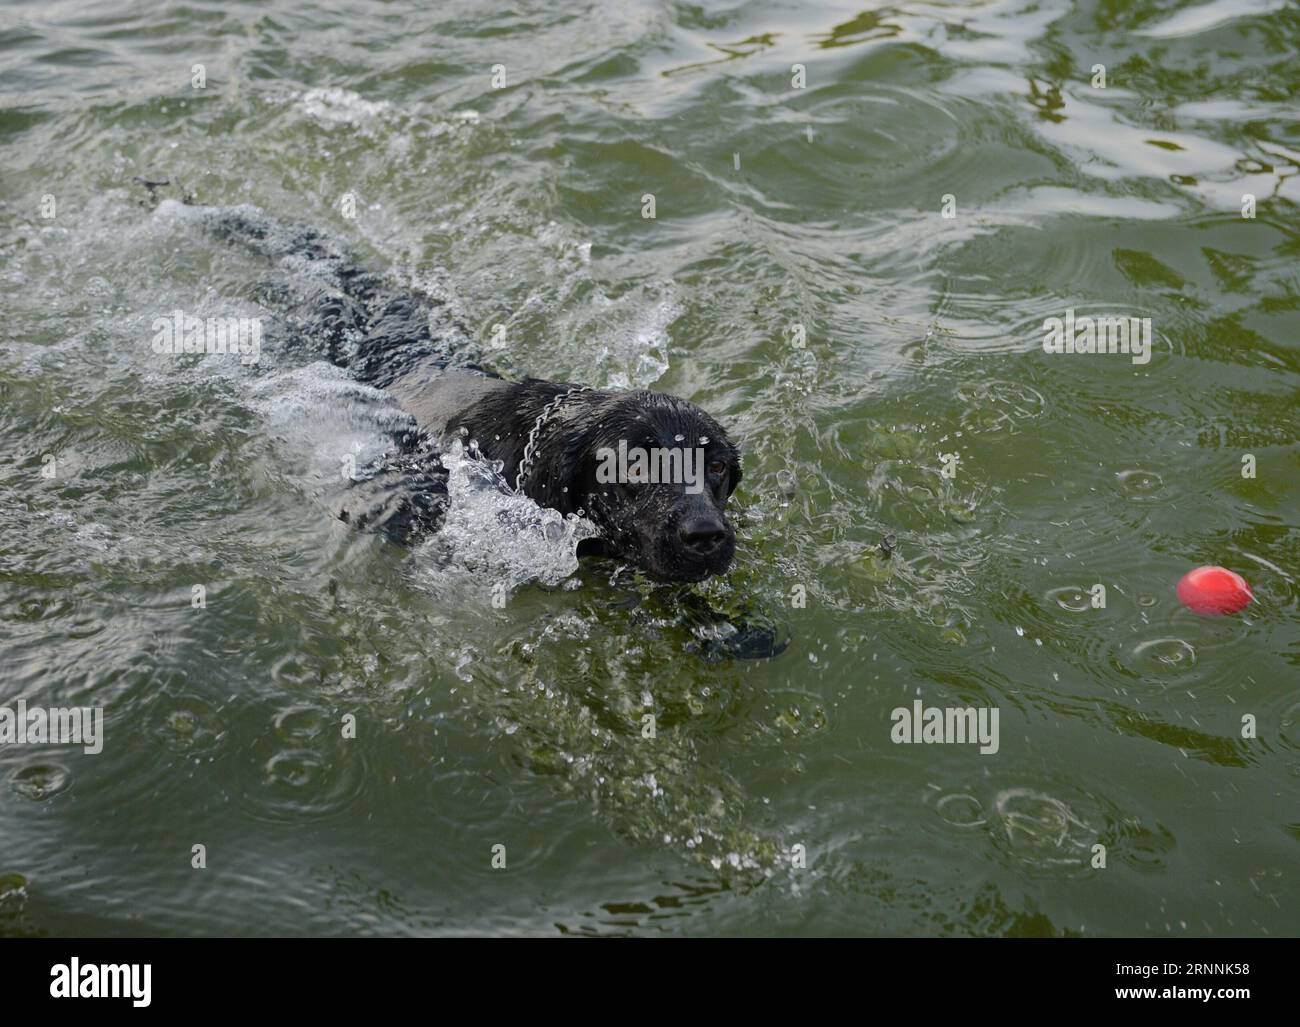 (170719) -- CHONGQING, 19. Juli 2017 -- Ein Polizeihund spielt im Pool, um sich in der südwestchinesischen Gemeinde Chongqing am 19. Juli 2017 abzukühlen. Trainer verwenden verschiedene Methoden, um die Hitze für Polizeihunde in Chongqing zu besiegen. ) (zx) CHINA-CHONGQING-HEAT-POLICE DOG (CN) CaoxFeng PUBLICATIONxNOTxINxCHN CHONGQING 19. Juli 2017 ein Polizeihund SPIELT im Pool, um sich im Südwesten Chinas abzukühlen S Chongqing Gemeinde 19. Juli 2017 Trainer verwenden verschiedene Methoden, um die Hitze für Polizeihunde in Chongqing ZX China Chongqing Heat Police Dog CaCN zu besiegen PUBLICATIONxNOTxINxCHN Stockfoto